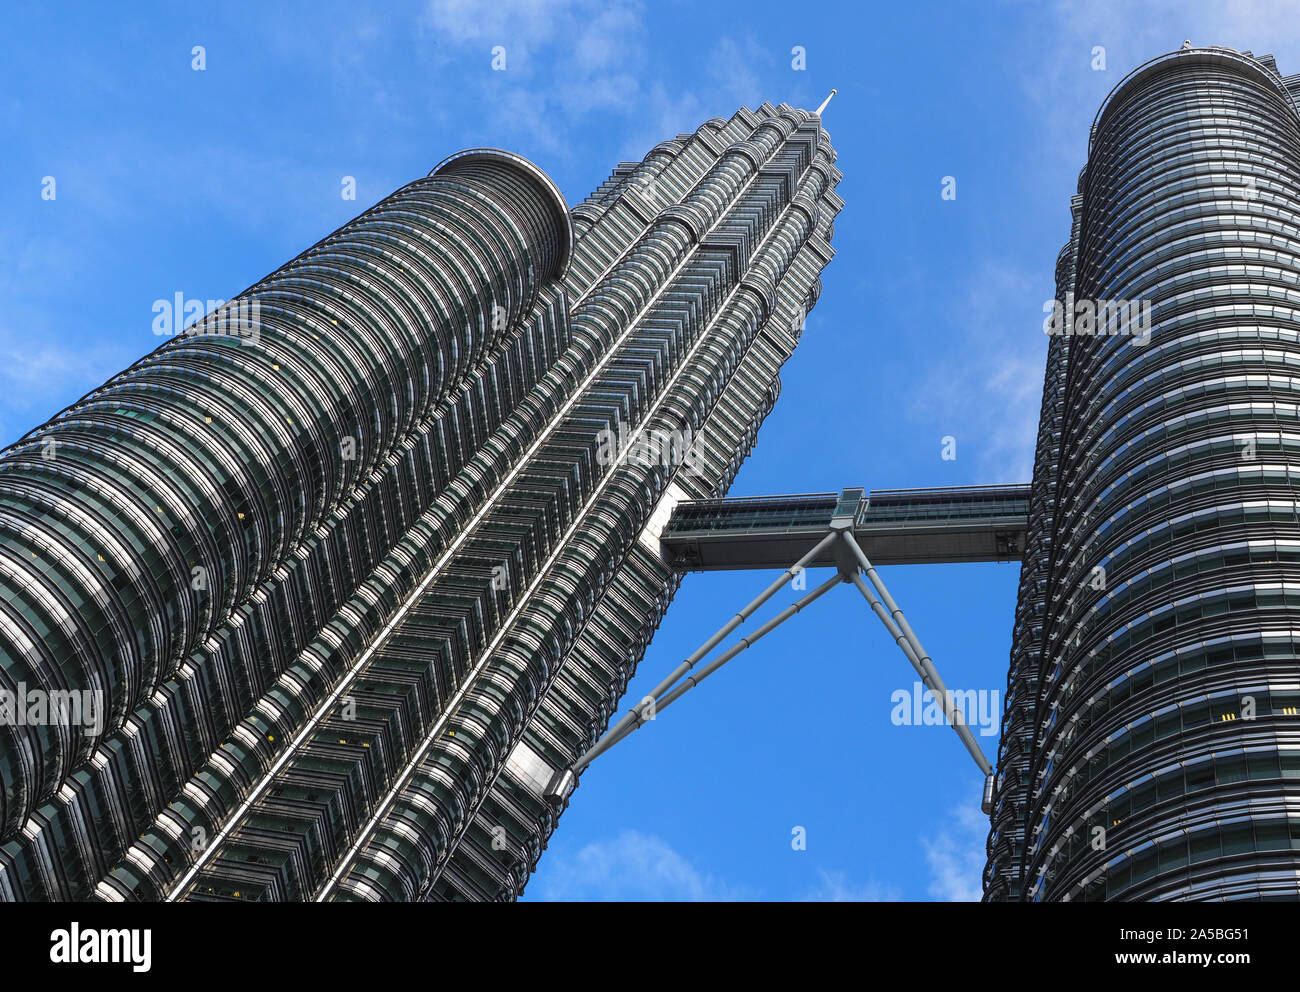 Petronas Twin Towers Sky Bridge, die Sky Bridge im 42. Stock auf die Petronas Twin Towers, Kuala Lumpur, Malaysia Stockfoto